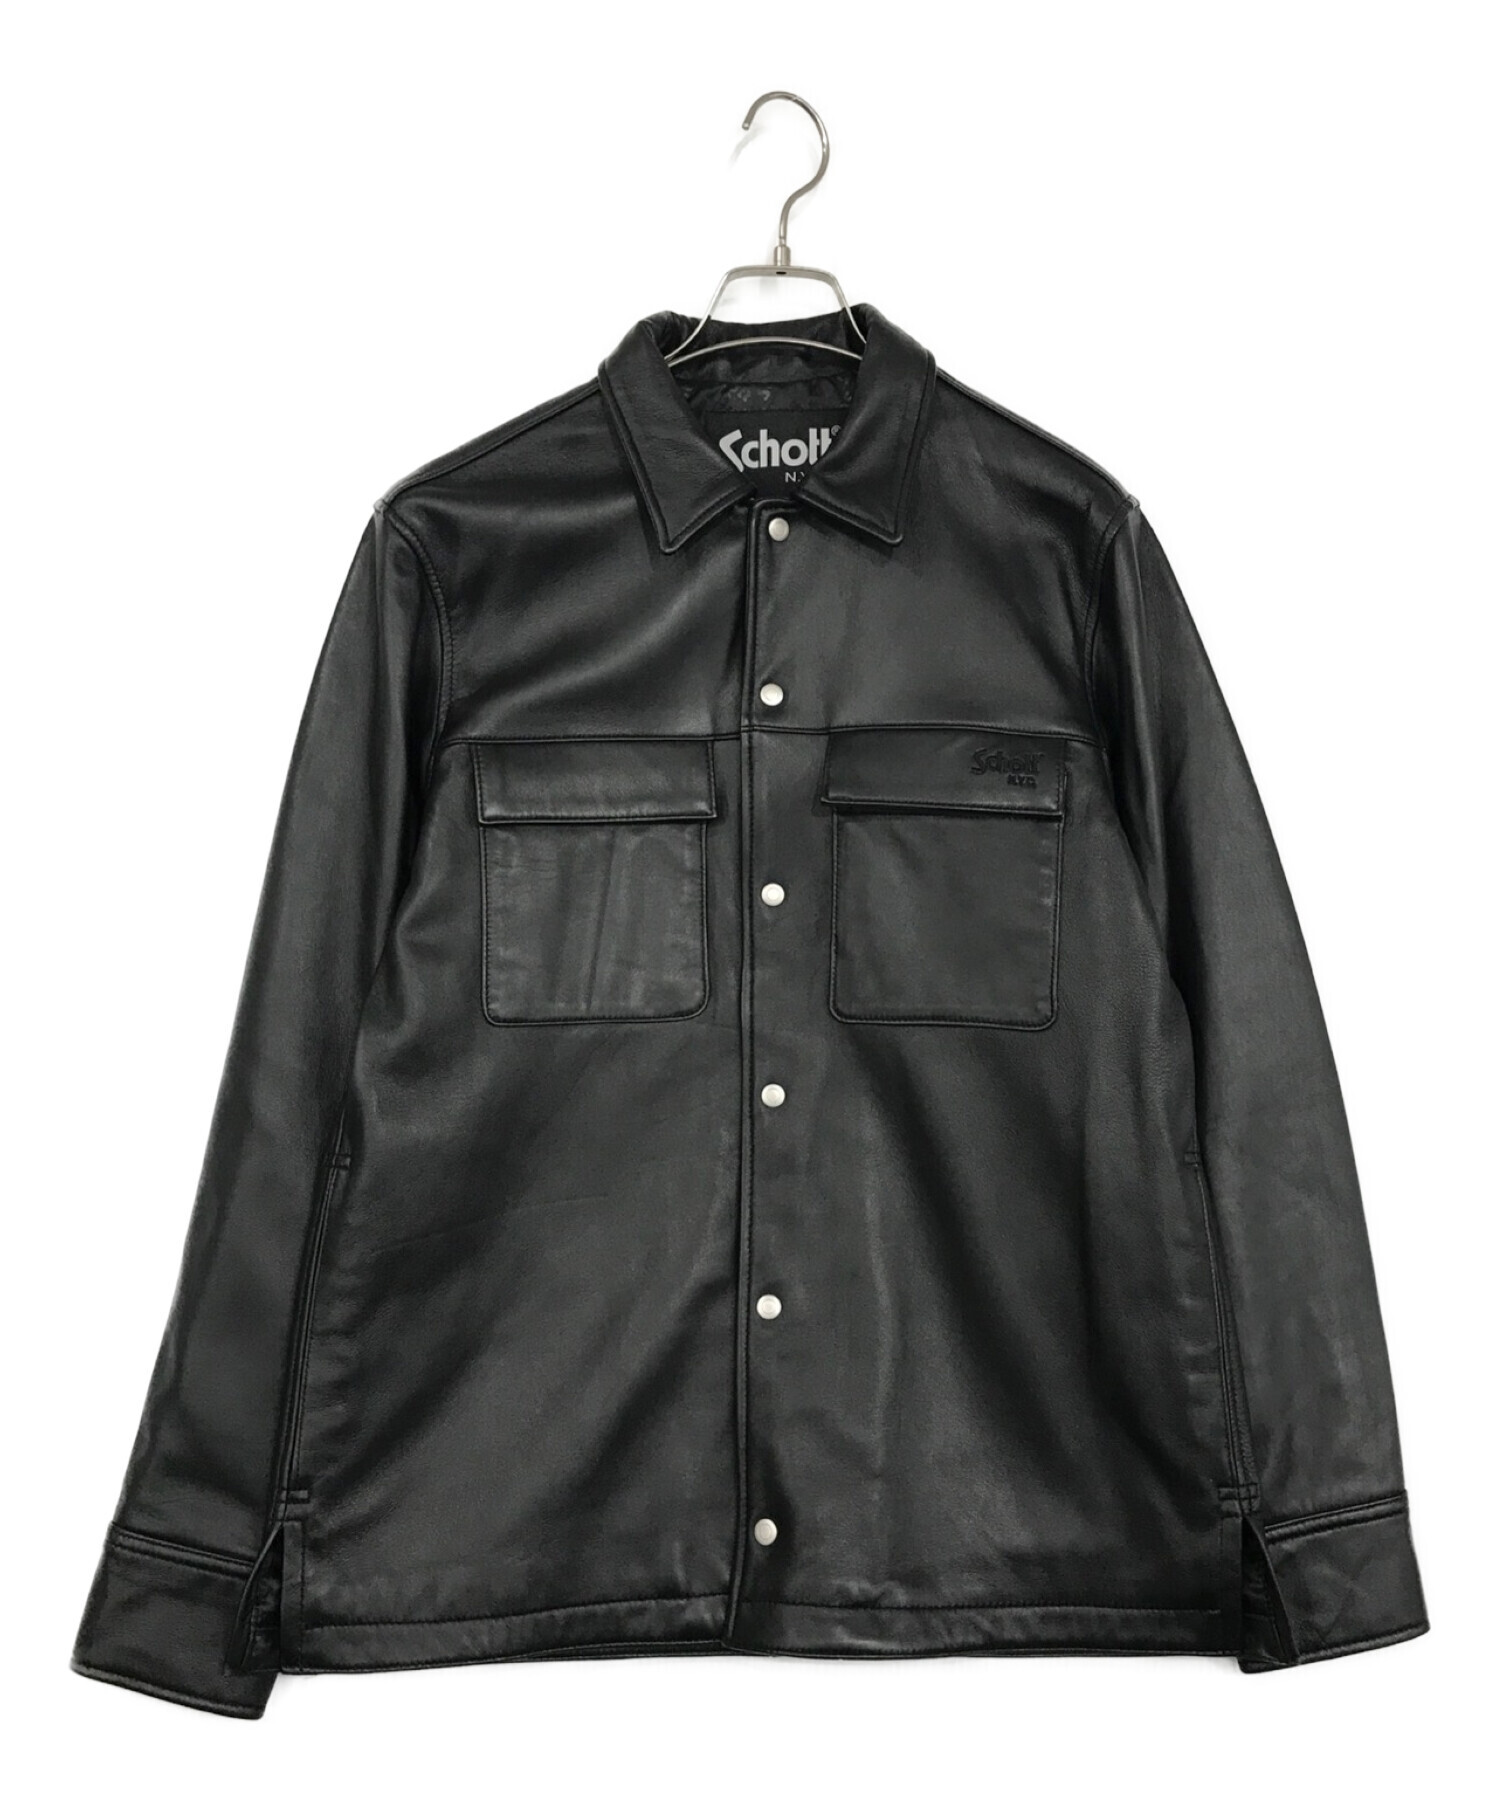 【新品未使用】lamb leather jacket 黒  Mサイズ